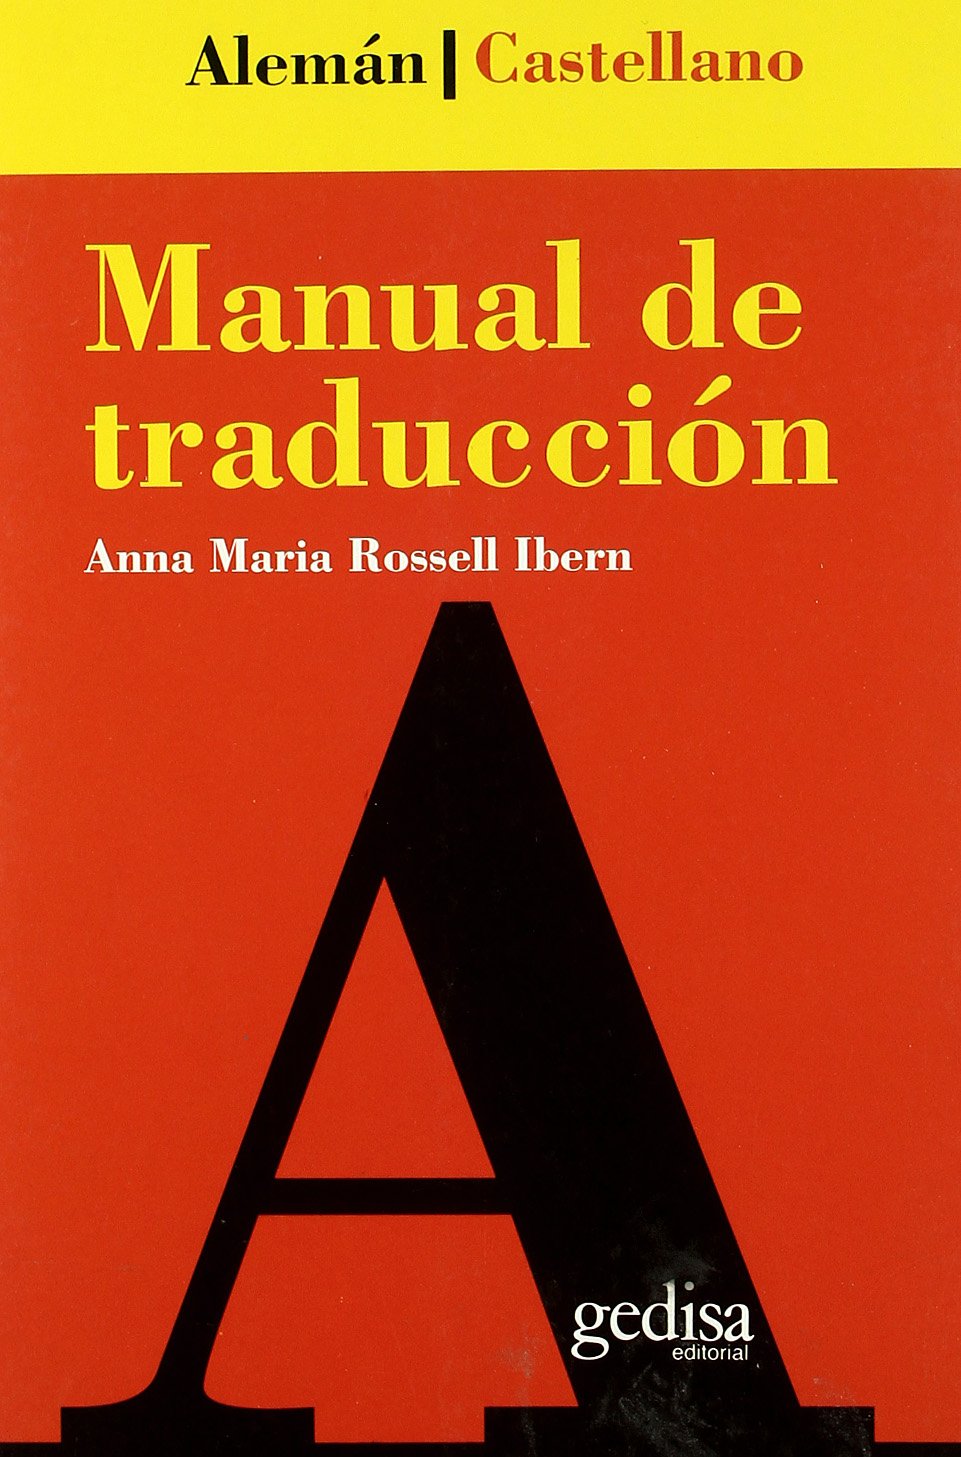 Portada de "Manual de traducción alemán-castellano", de Anna Rossell